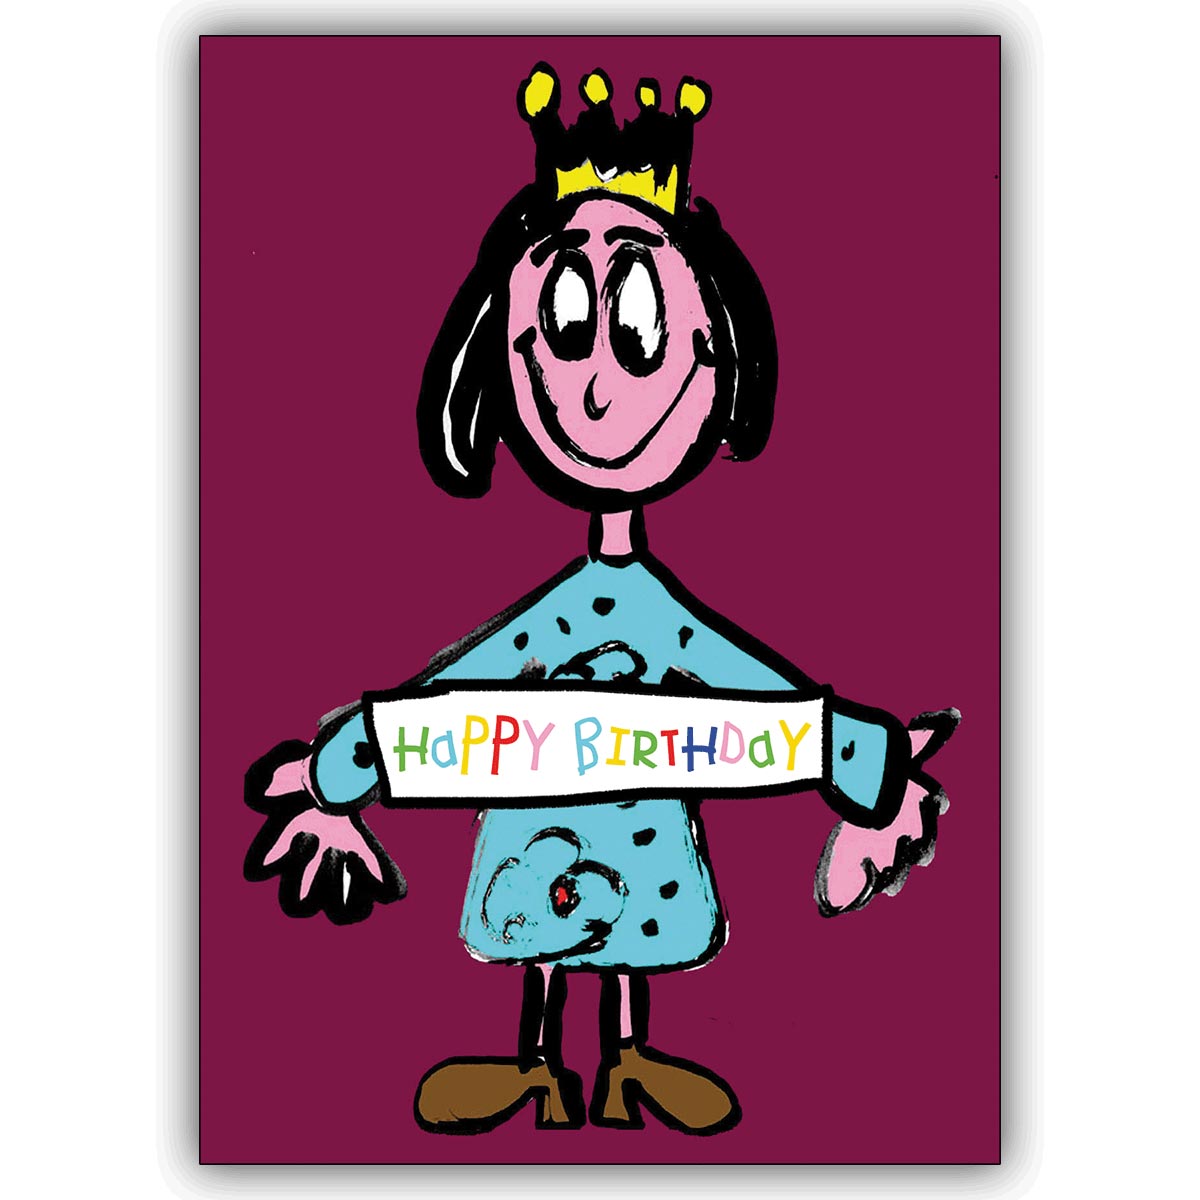 Schöne Prinzessin Geburtstagskarte um Geburtstagsgrüße zu überbringen: Happy Birthday